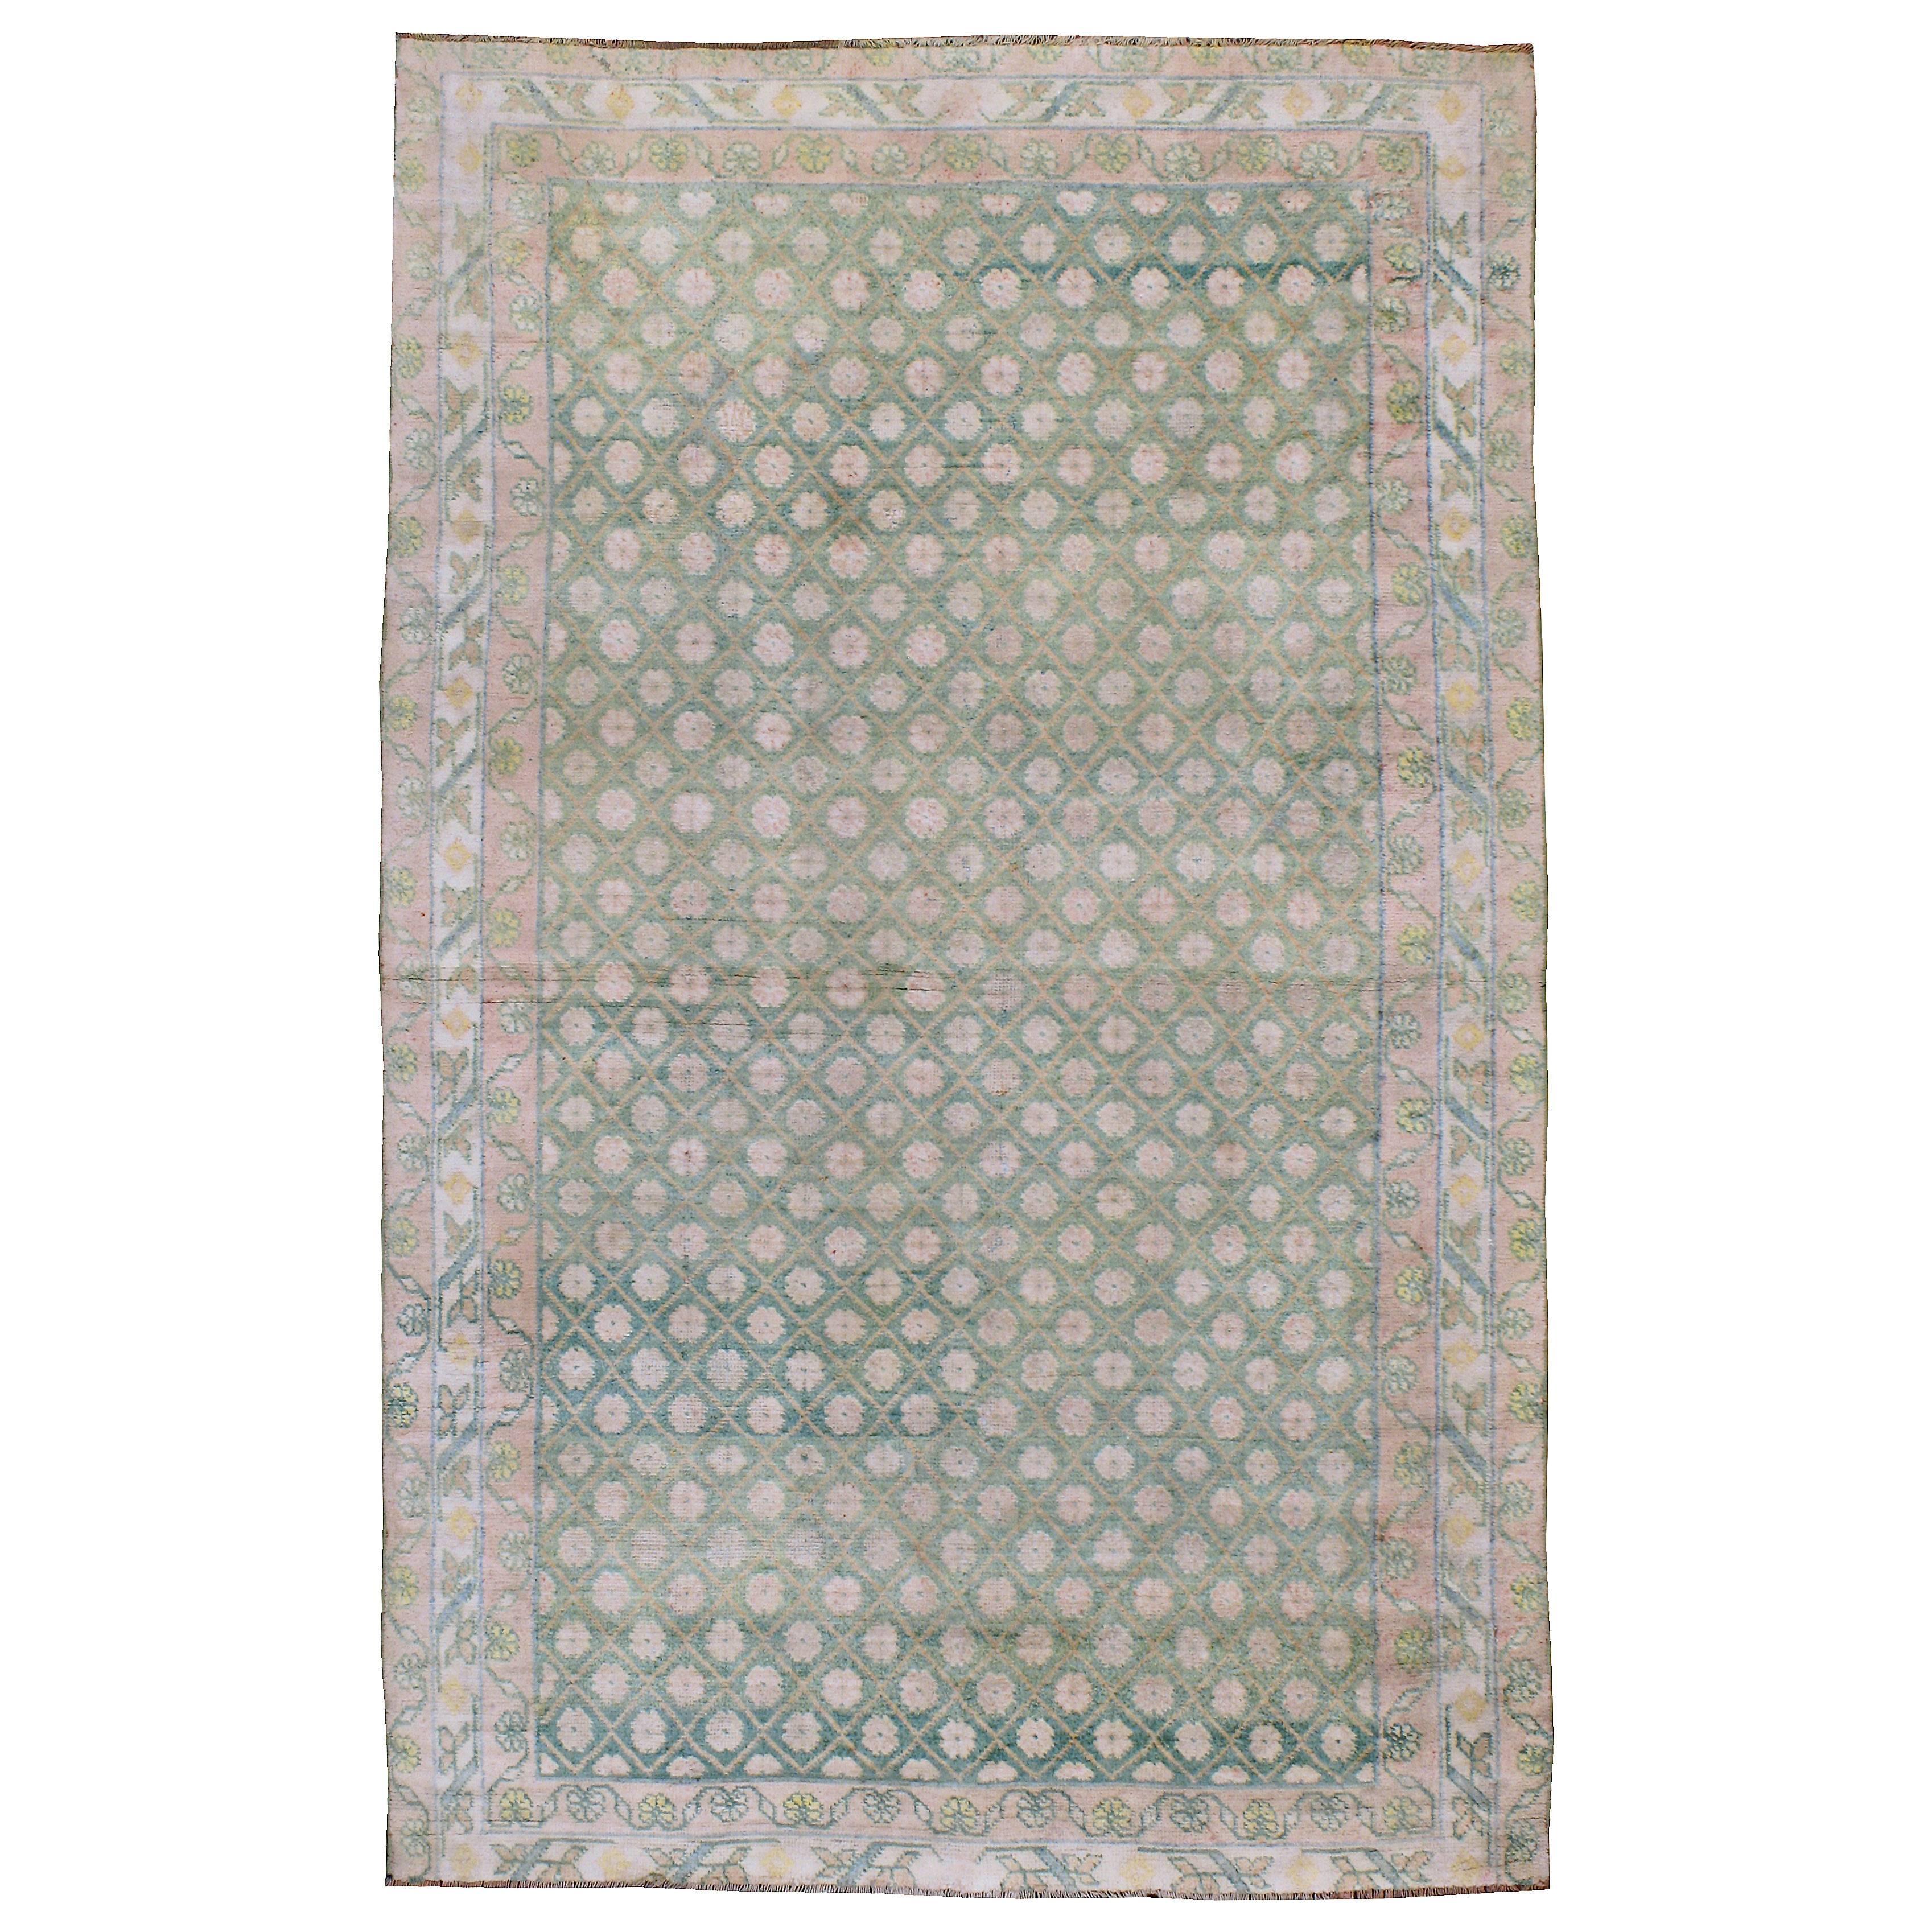 Agra-Teppich aus indischer Baumwolle